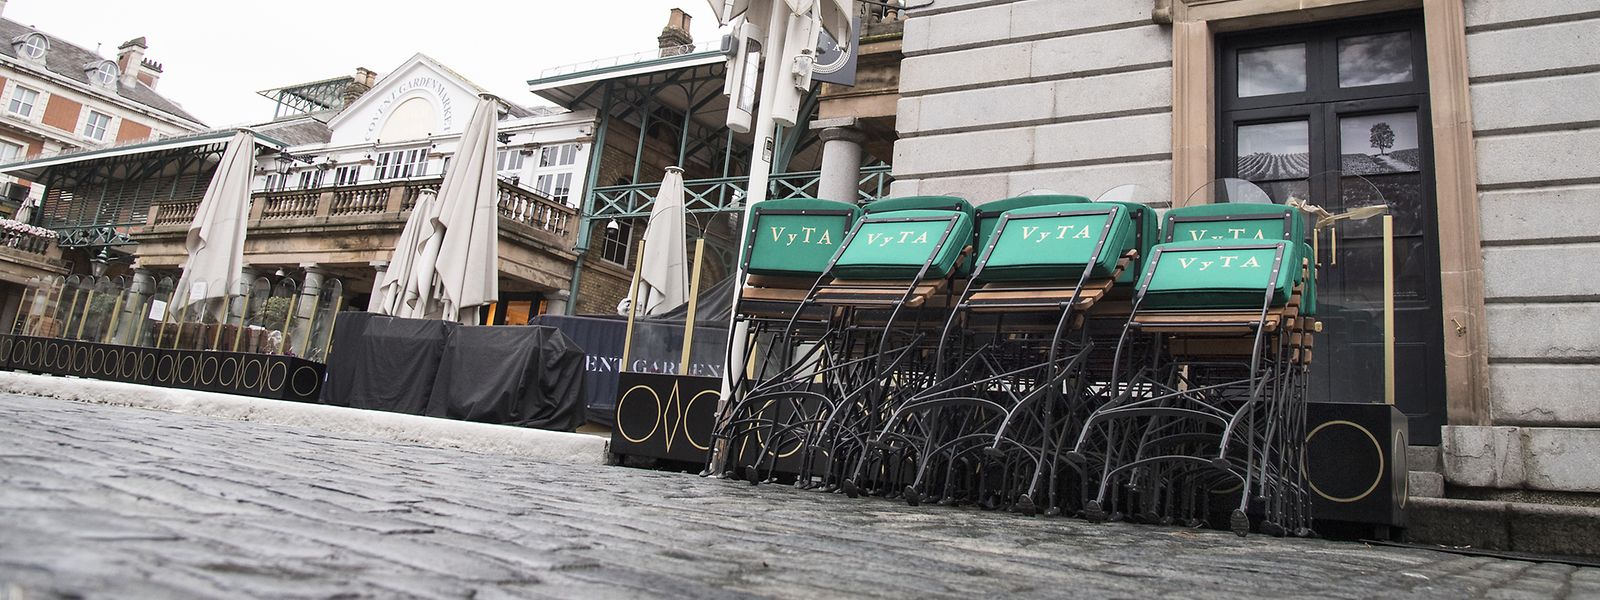 Gestapelte Stühle stehen in Covent Garden während Englands drittem nationalen Lockdown zur Eindämmung der Ausbreitung des neuartigen Coronavirus.